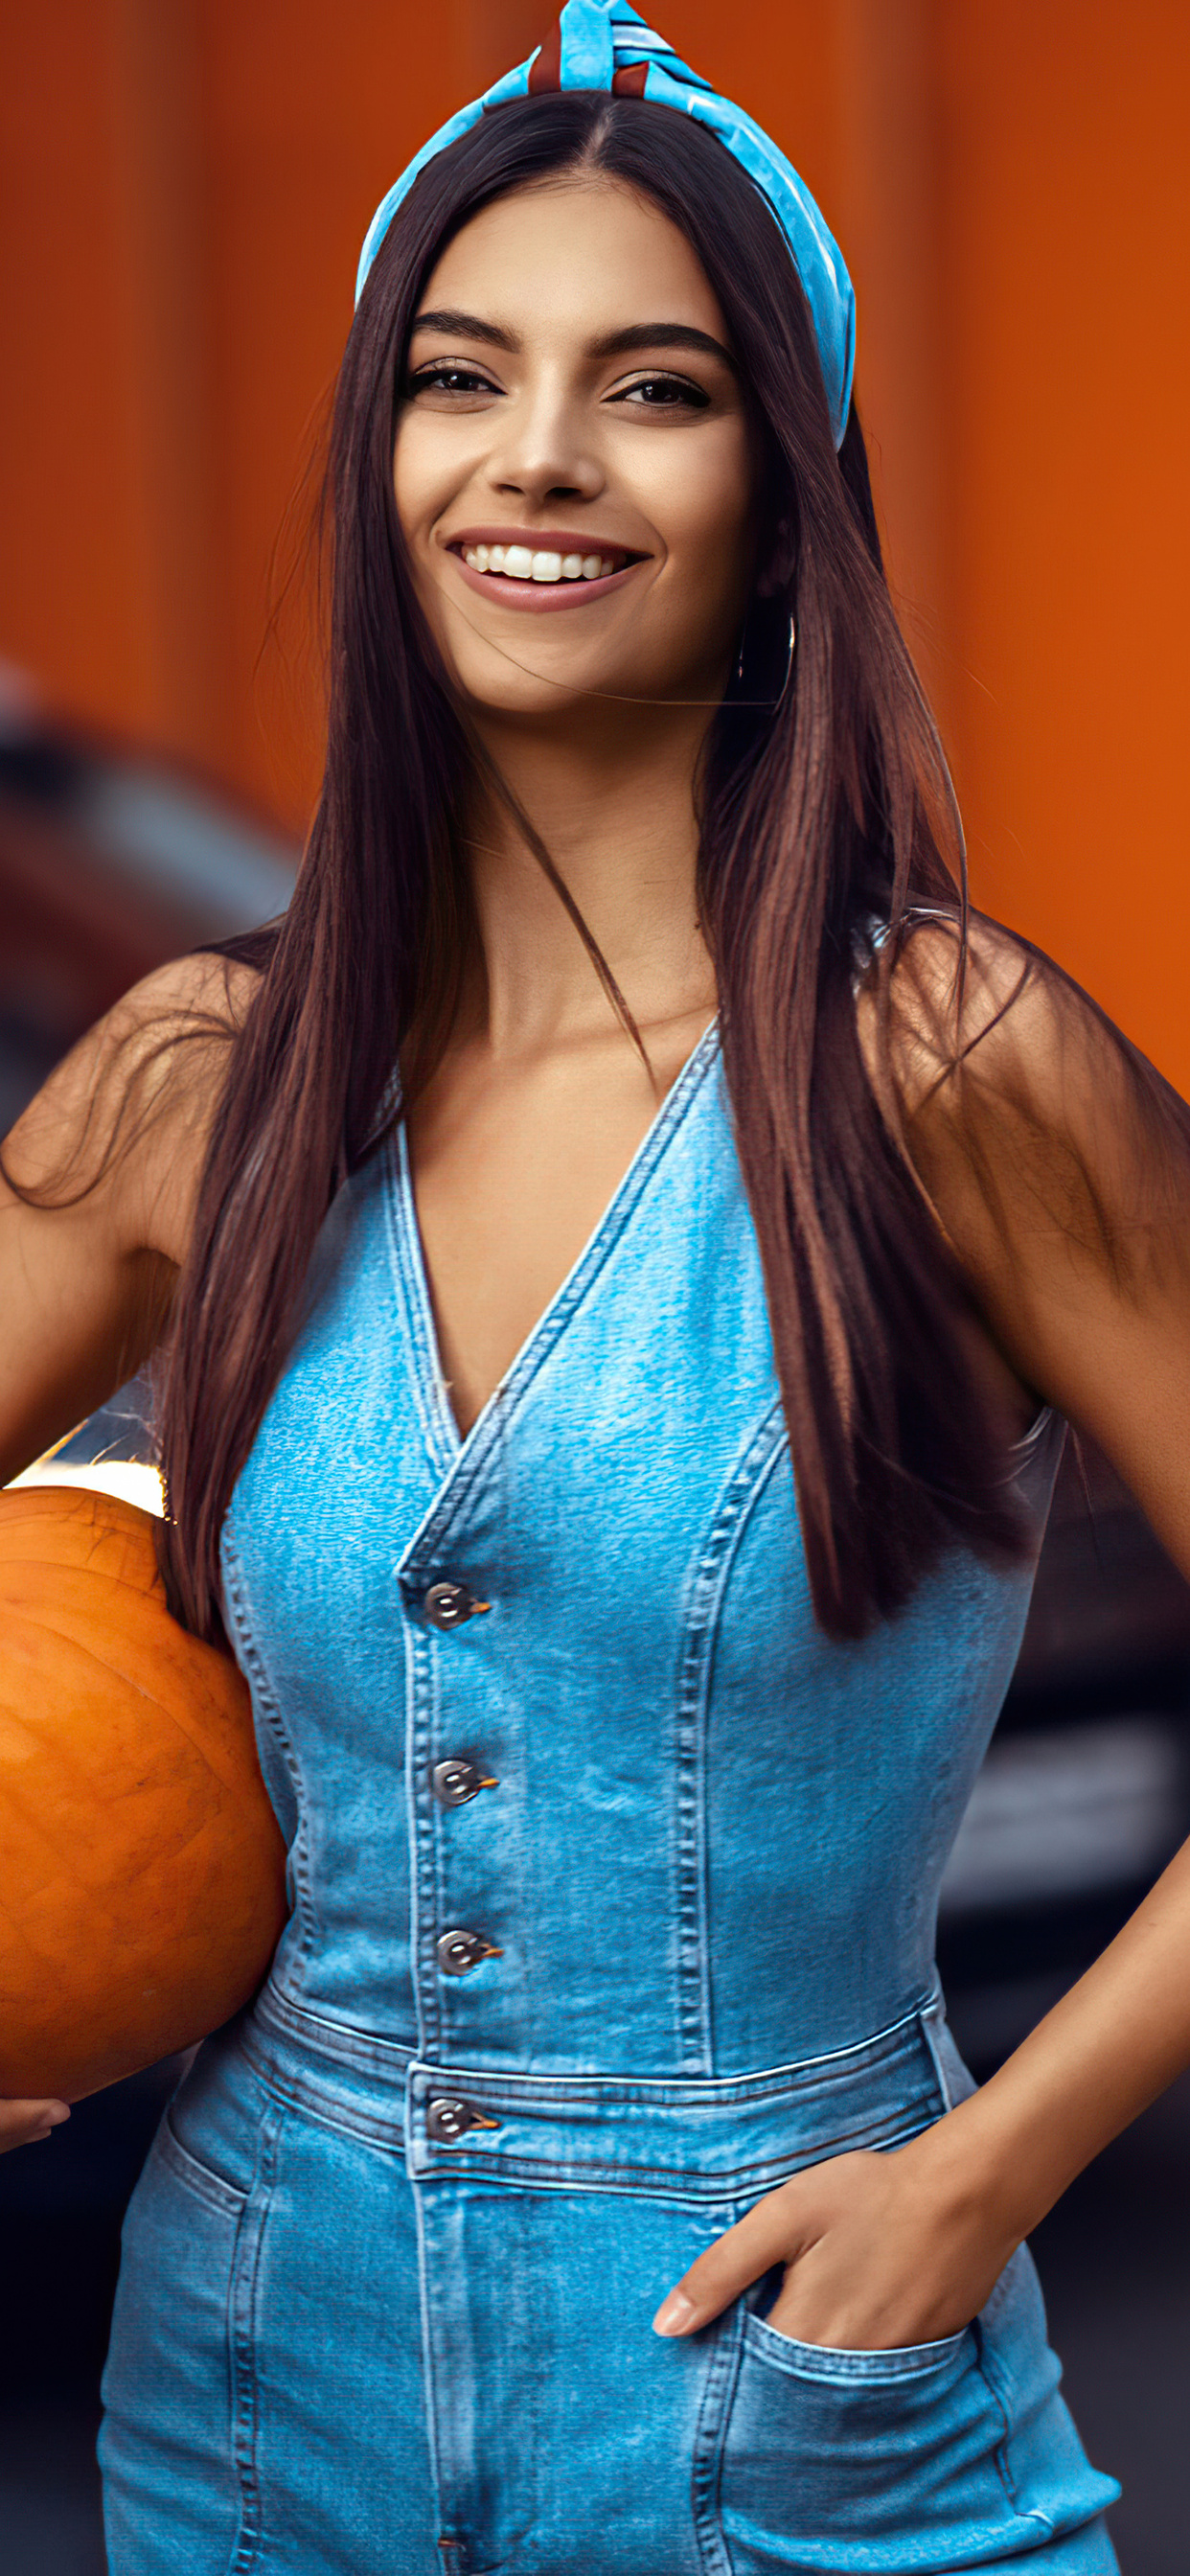 girl-with-halloween-pumpkin-5k-8g.jpg